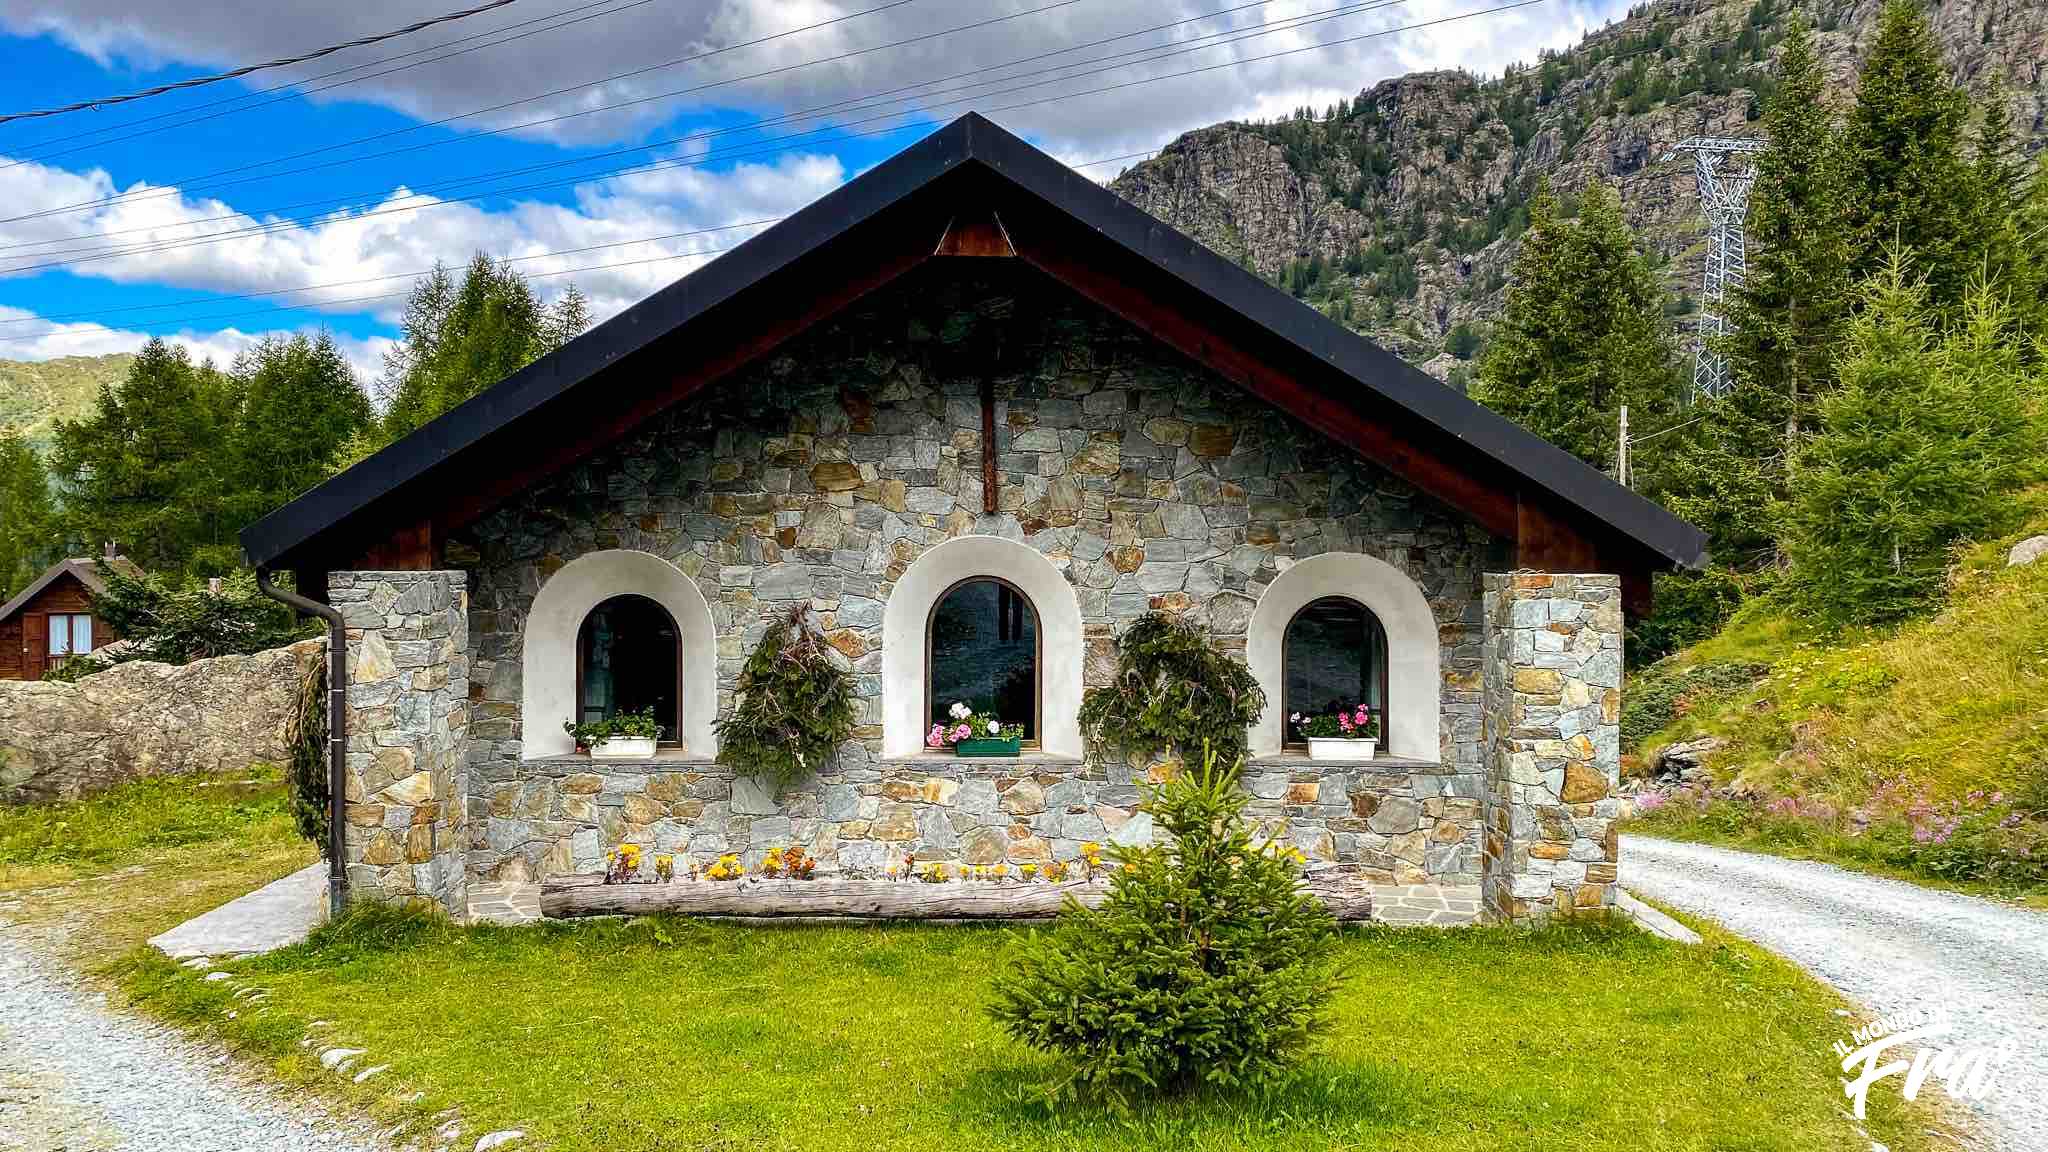 Pranzare in rifugio in Valmalenco - Rifugio Alpe Musella